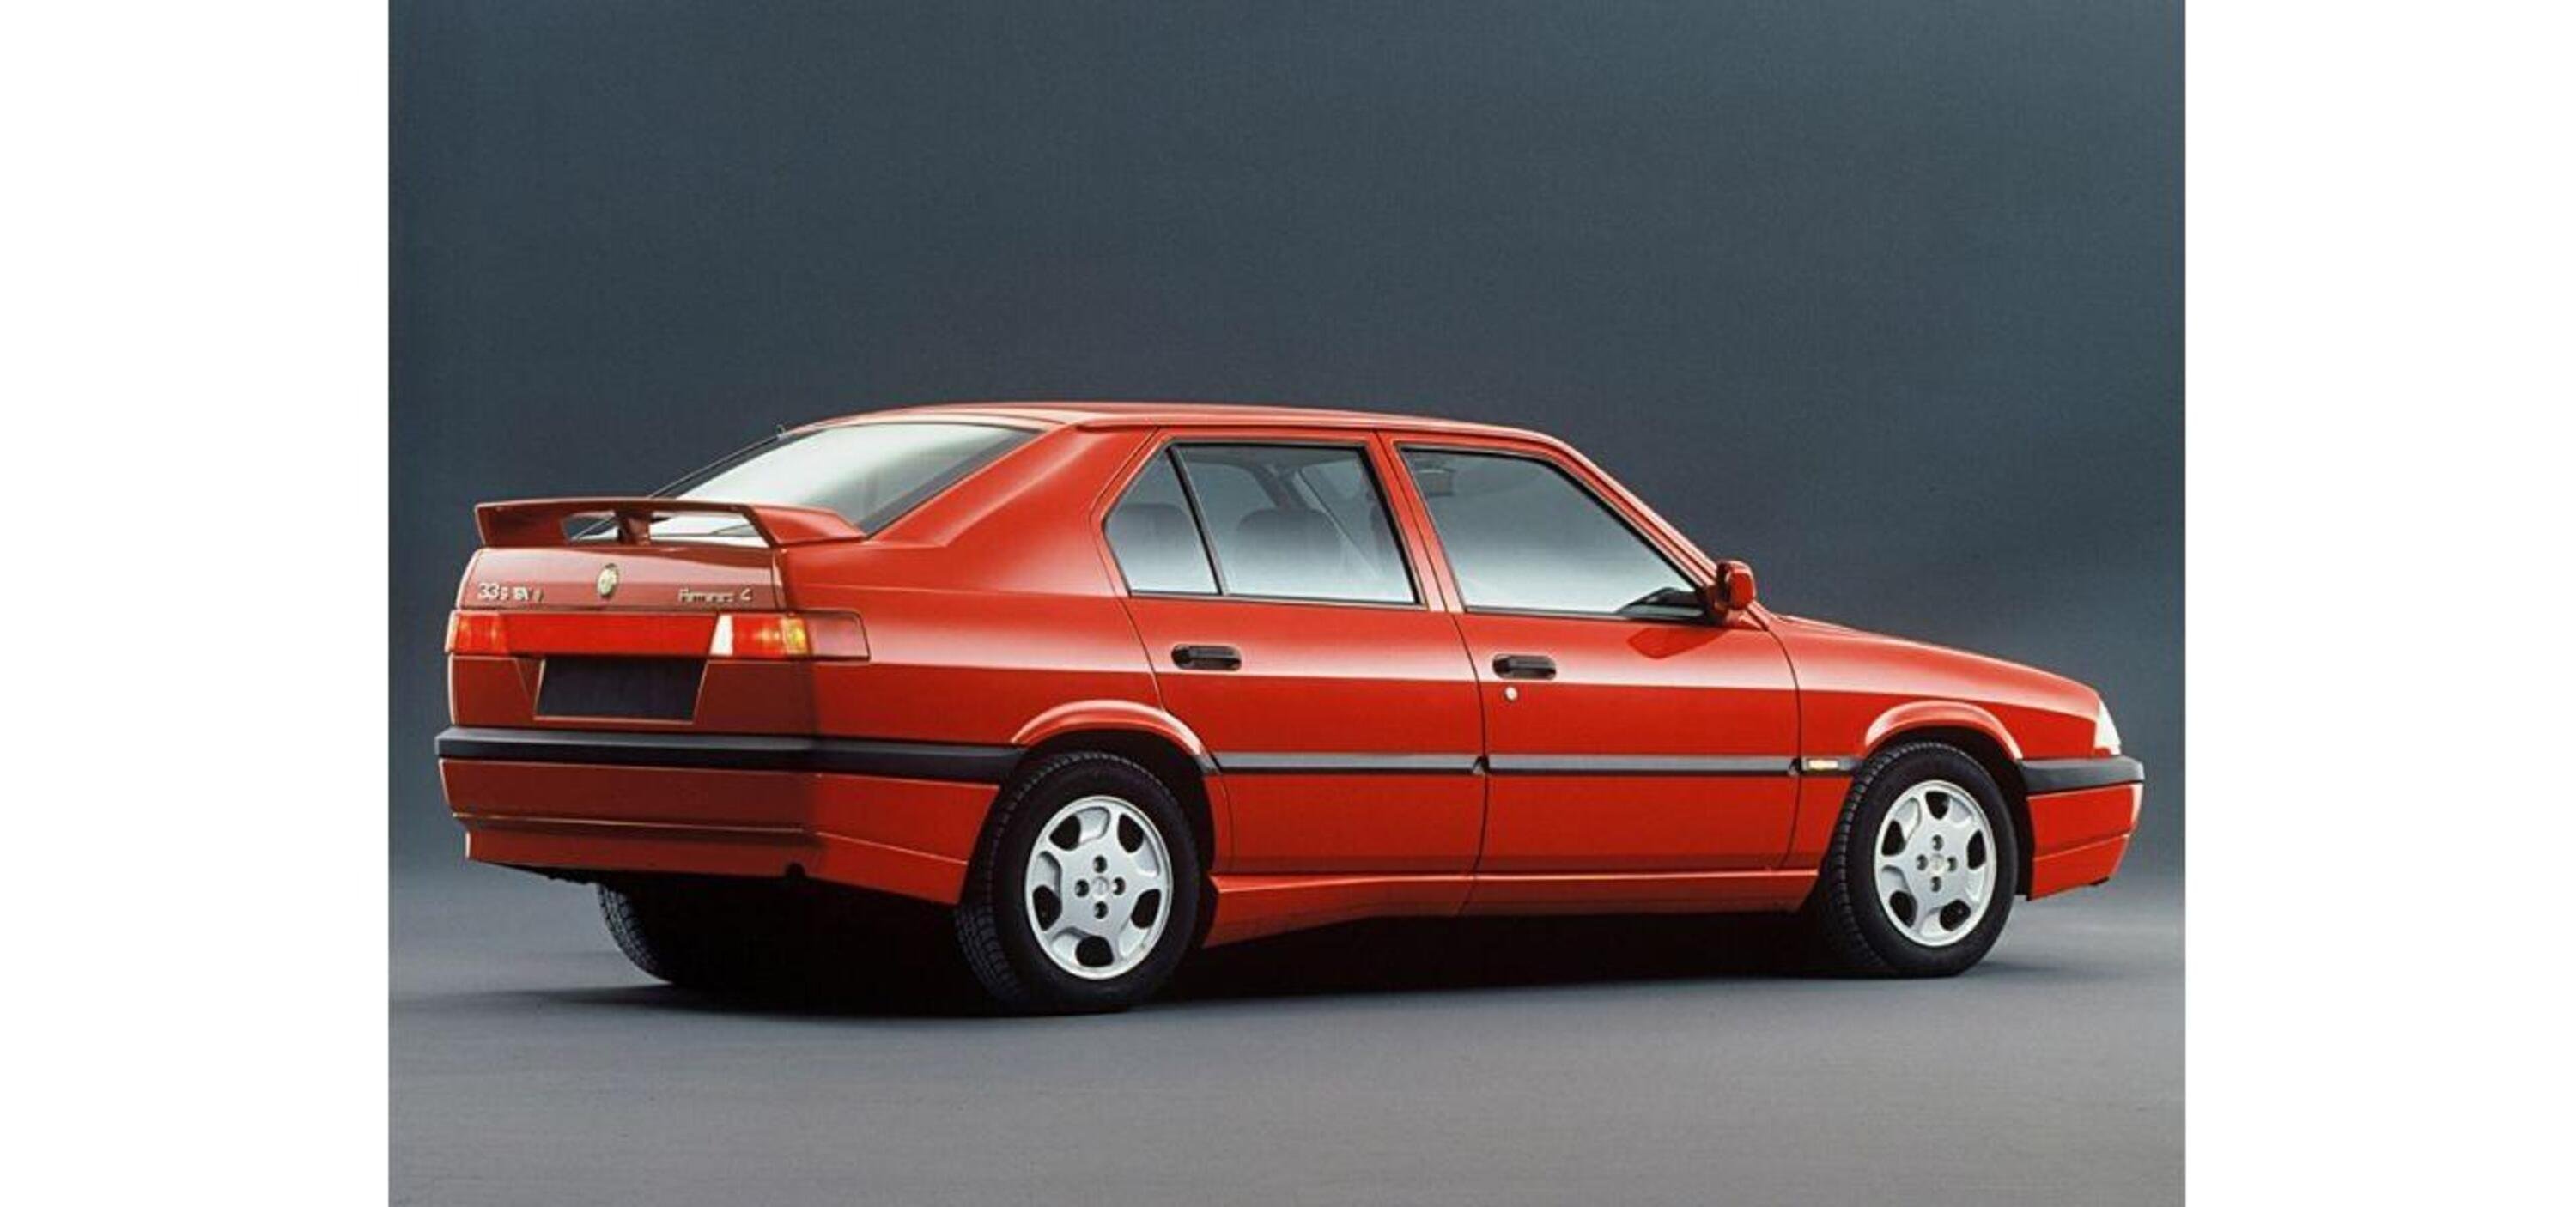 30 anni e 4 ruote, Icone tricolori: Alfa Romeo 33 1.7 ie Quadrifoglio [avvia il boxer come una Porsche]